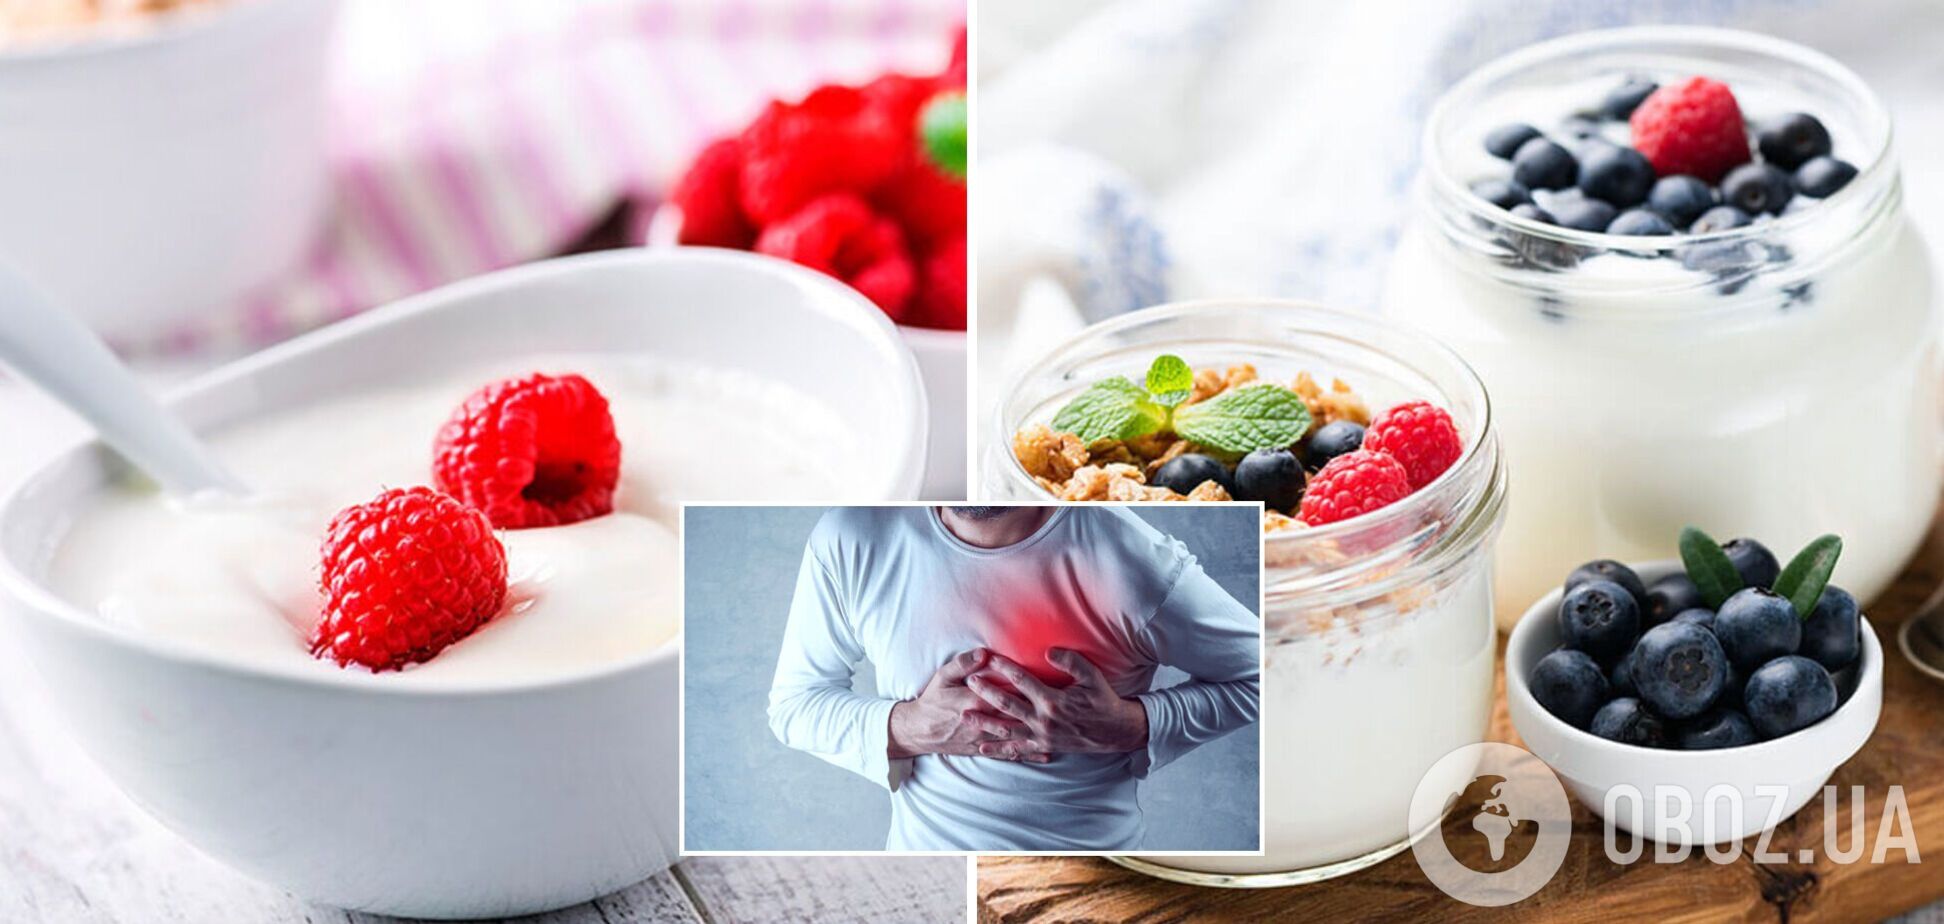 Ученые рассказали, как влияет употребление йогурта на сердечно-сосудистую систему 